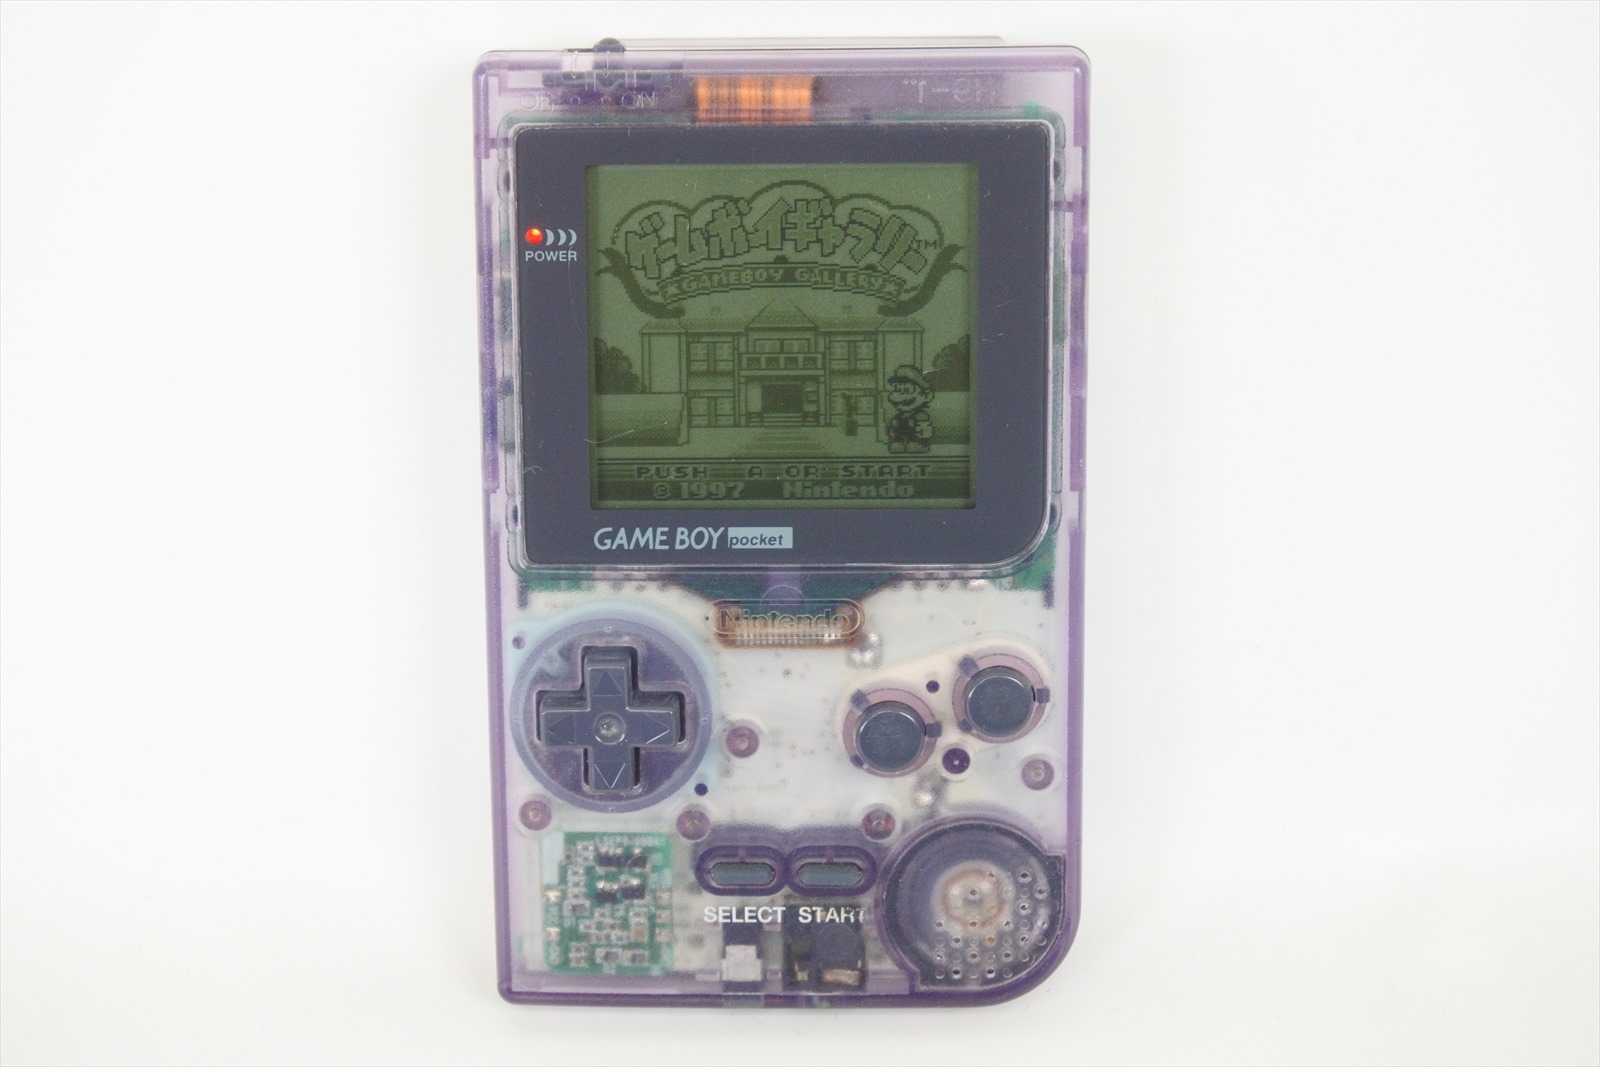 Game Boy Pocket Clear Purple Console Mgb 001 Gameboy Nintendo Ref 01 Tested Gb Ebay